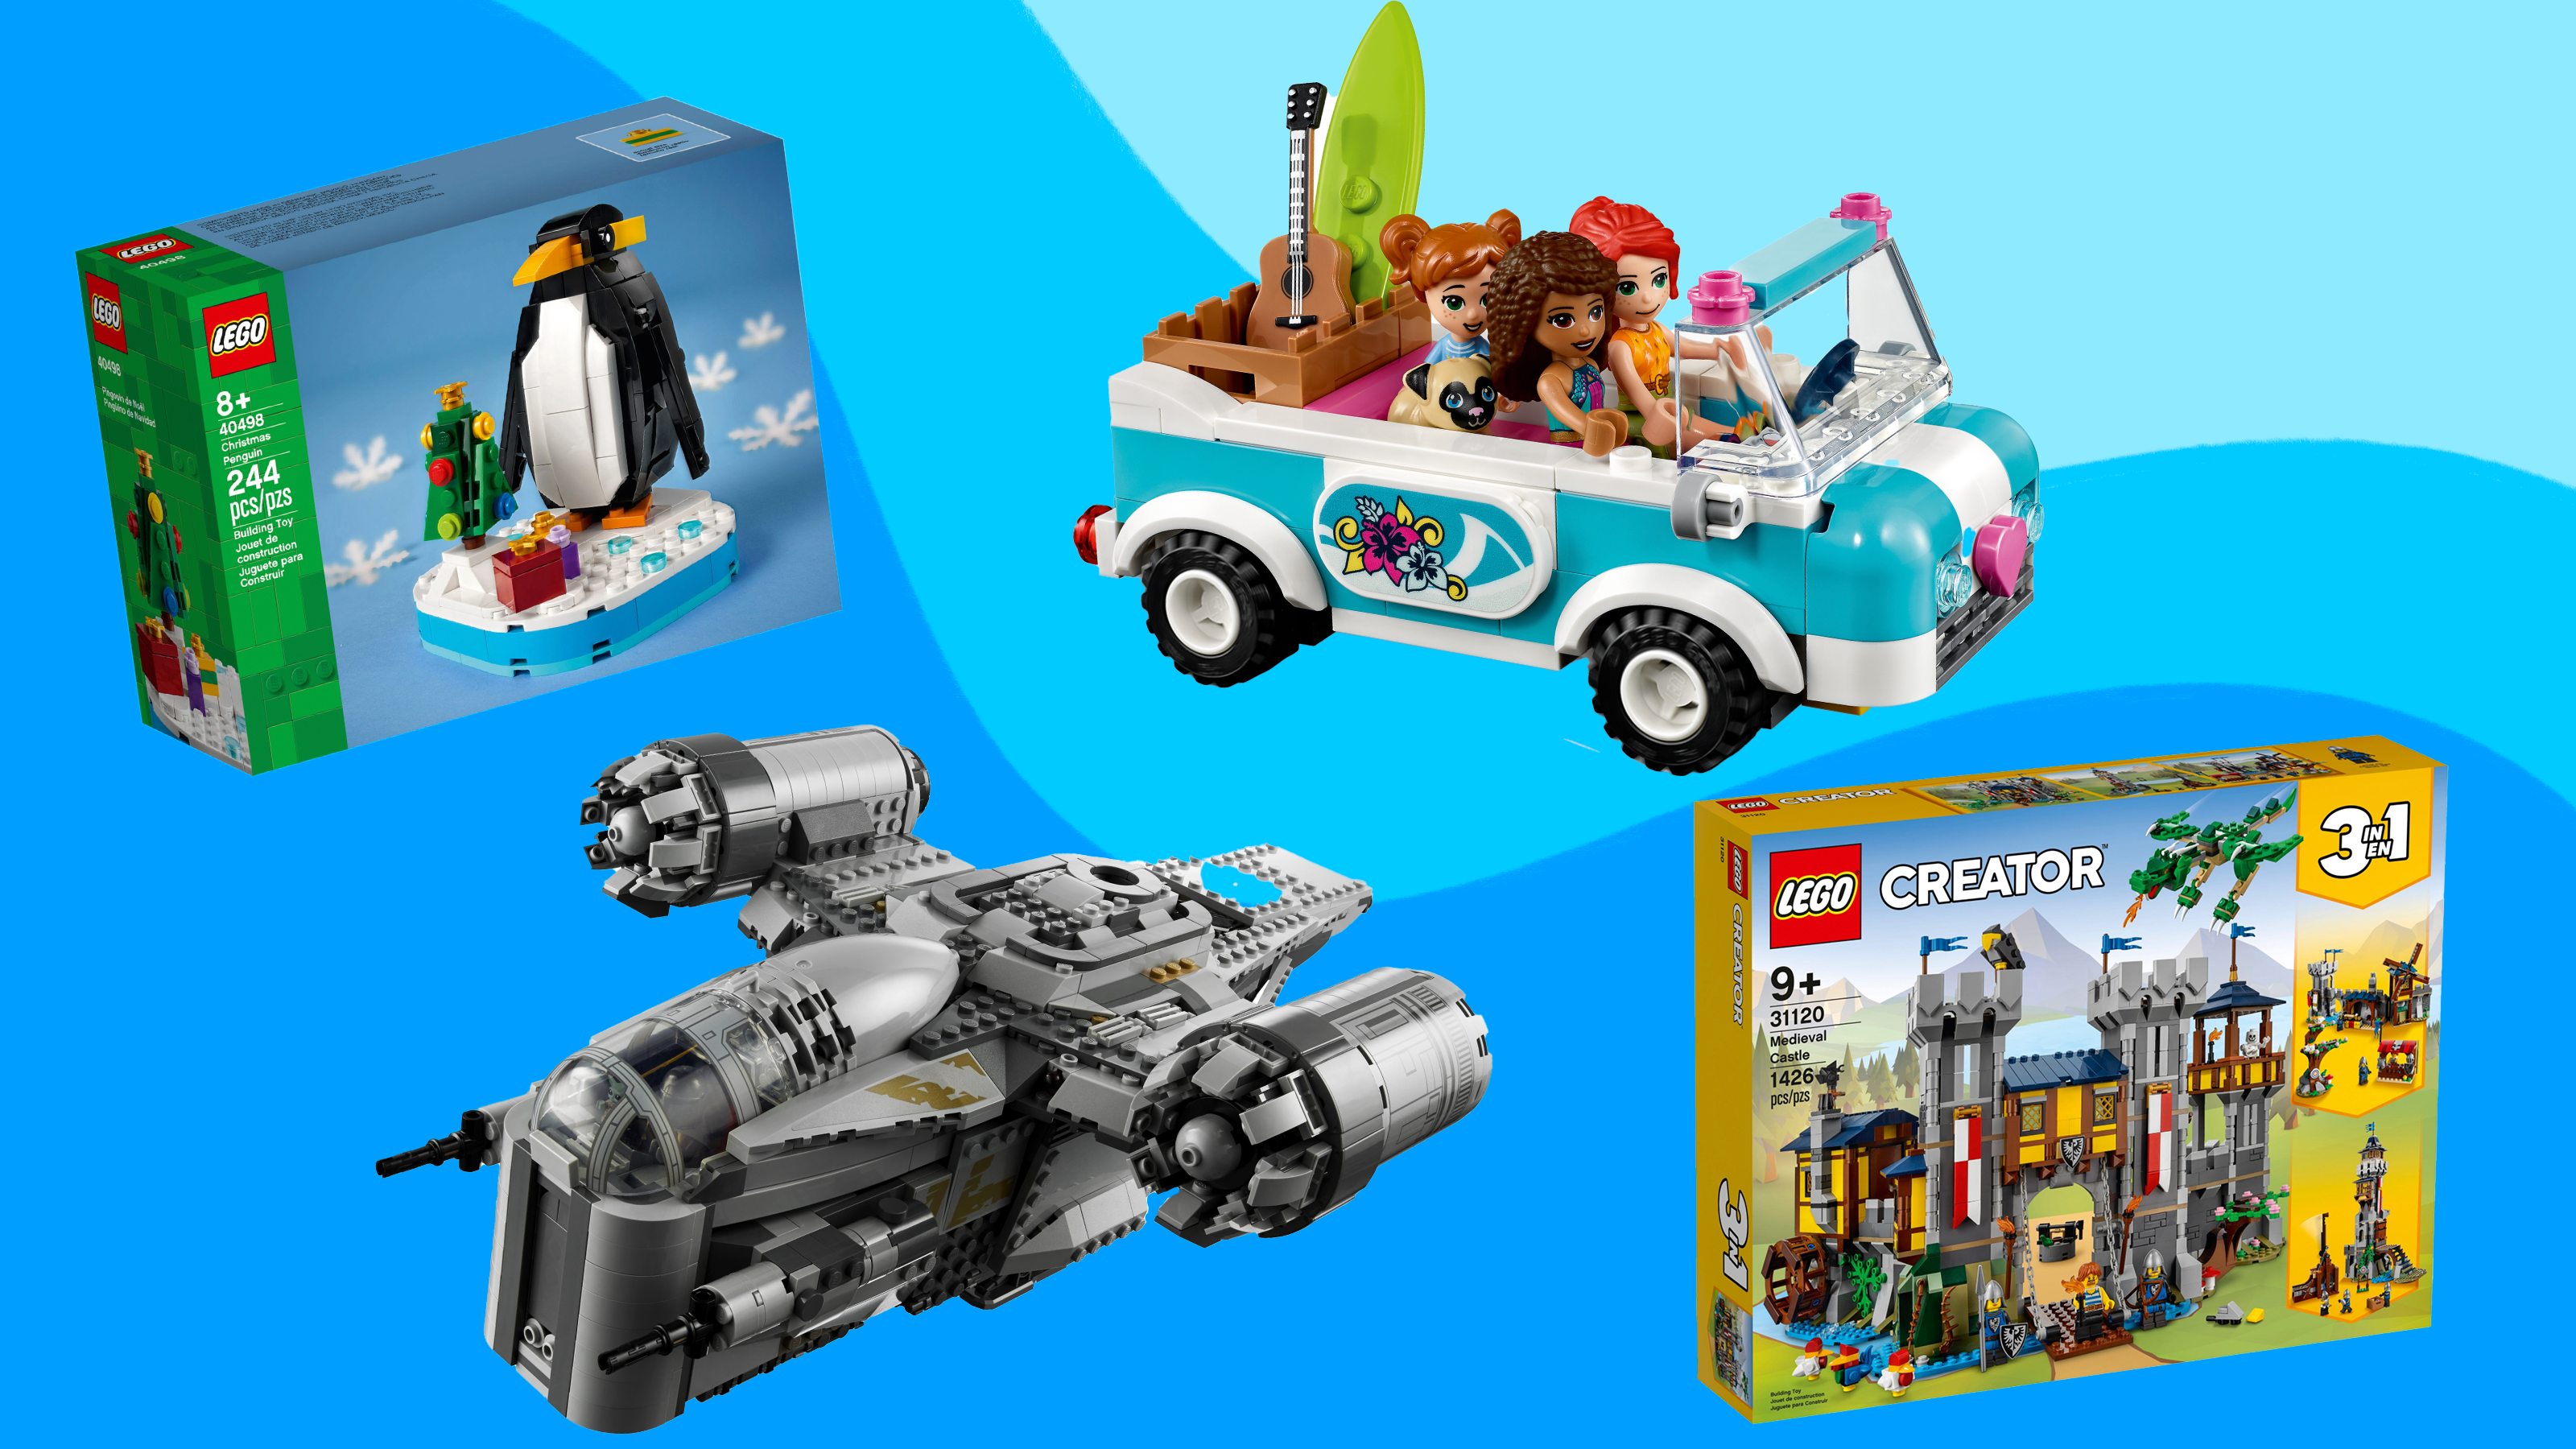 Best Lego sets for kids: Star Wars, Mario, Harry Potter